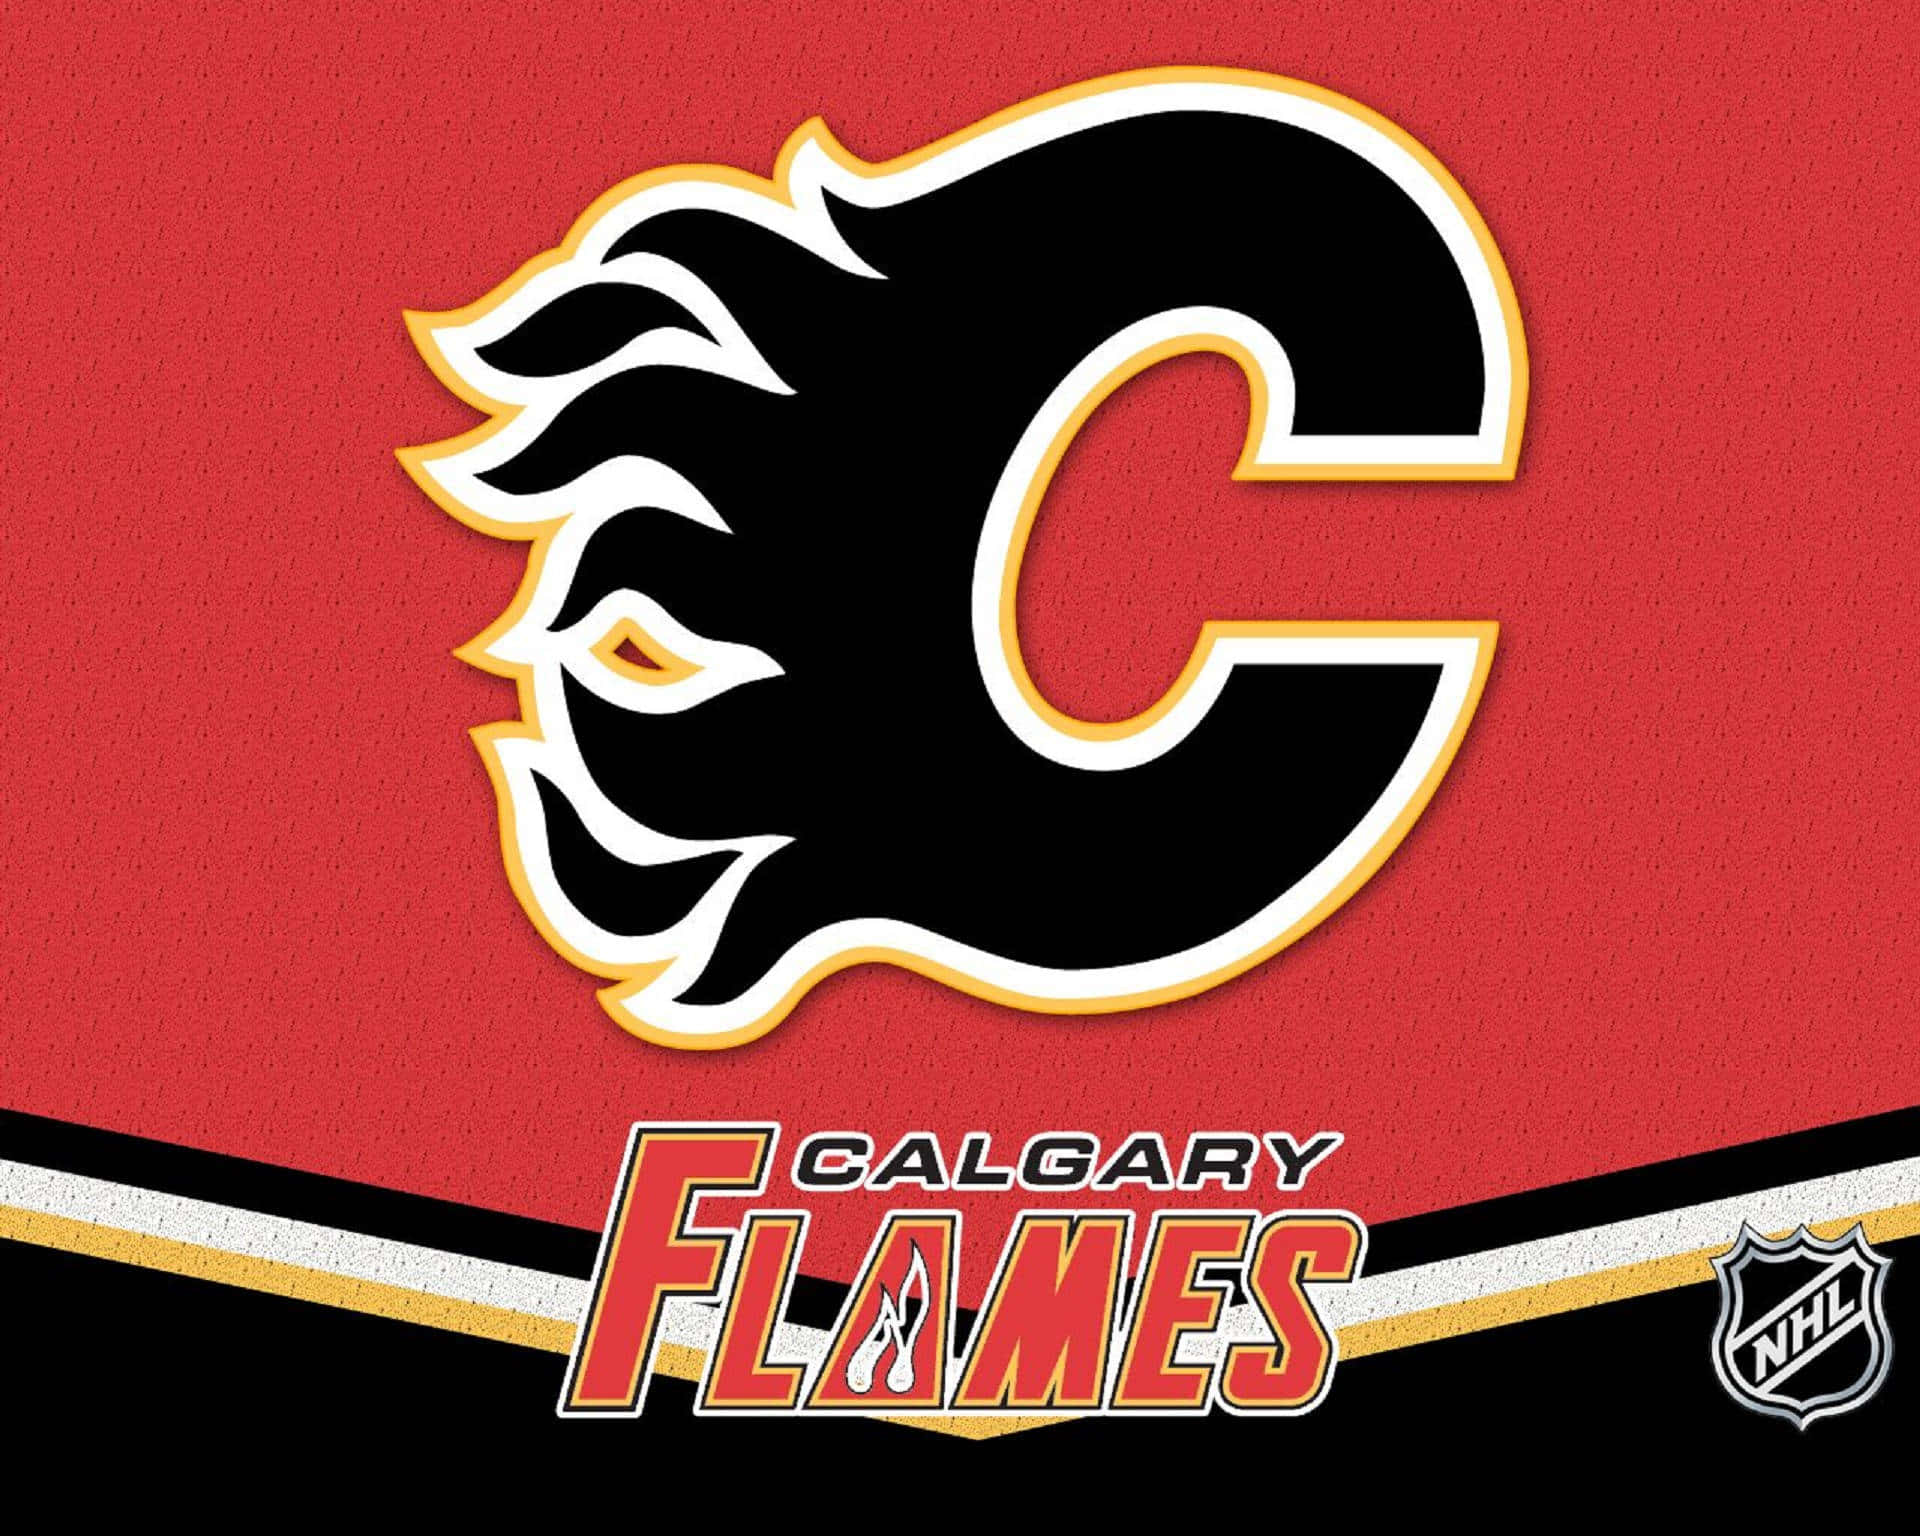 Unaserata Spettacolare Di Hockey All'arena Dei Calgary Flames!